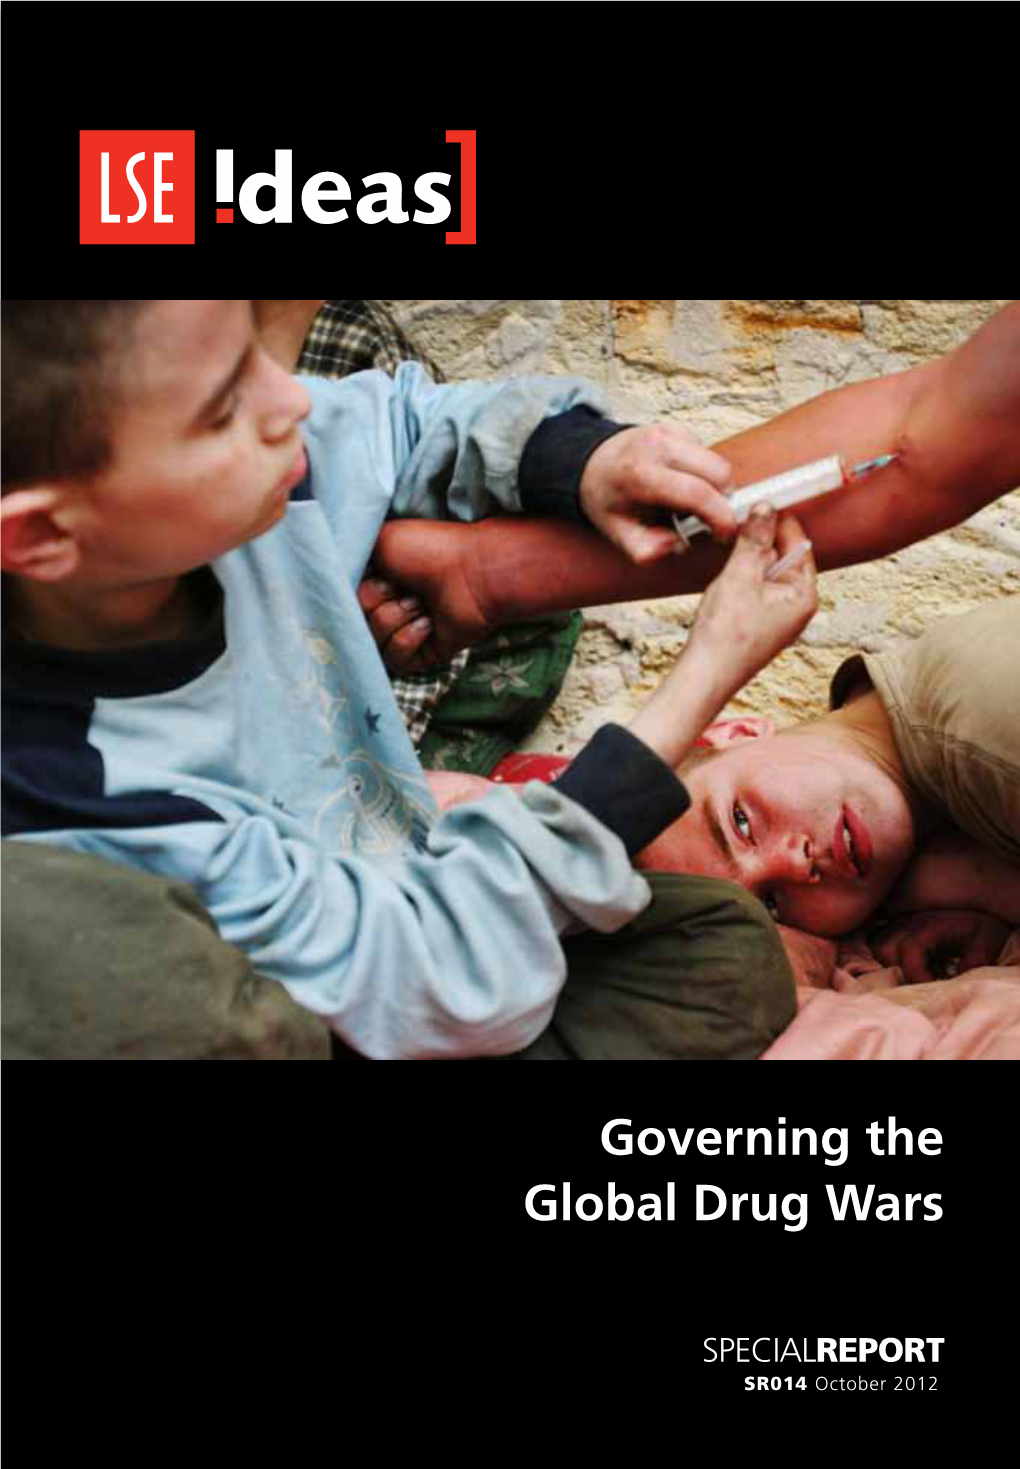 LSE IDEAS Governing the Global Drug Wars